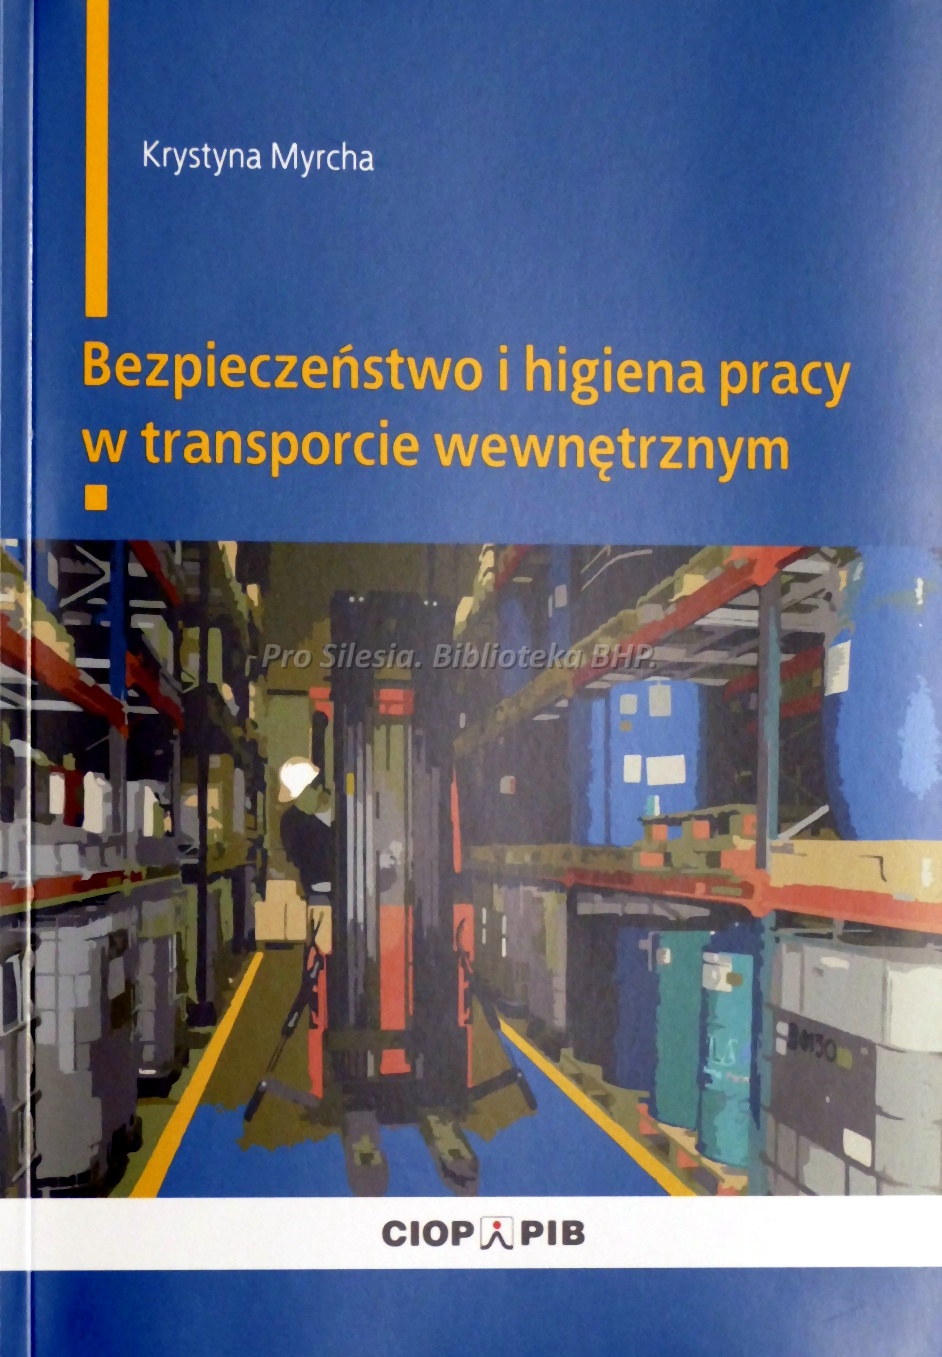 Bezpieczeństwo i higiena pracy w transporcie wewnętrznym, wyd. CIOP-PIB